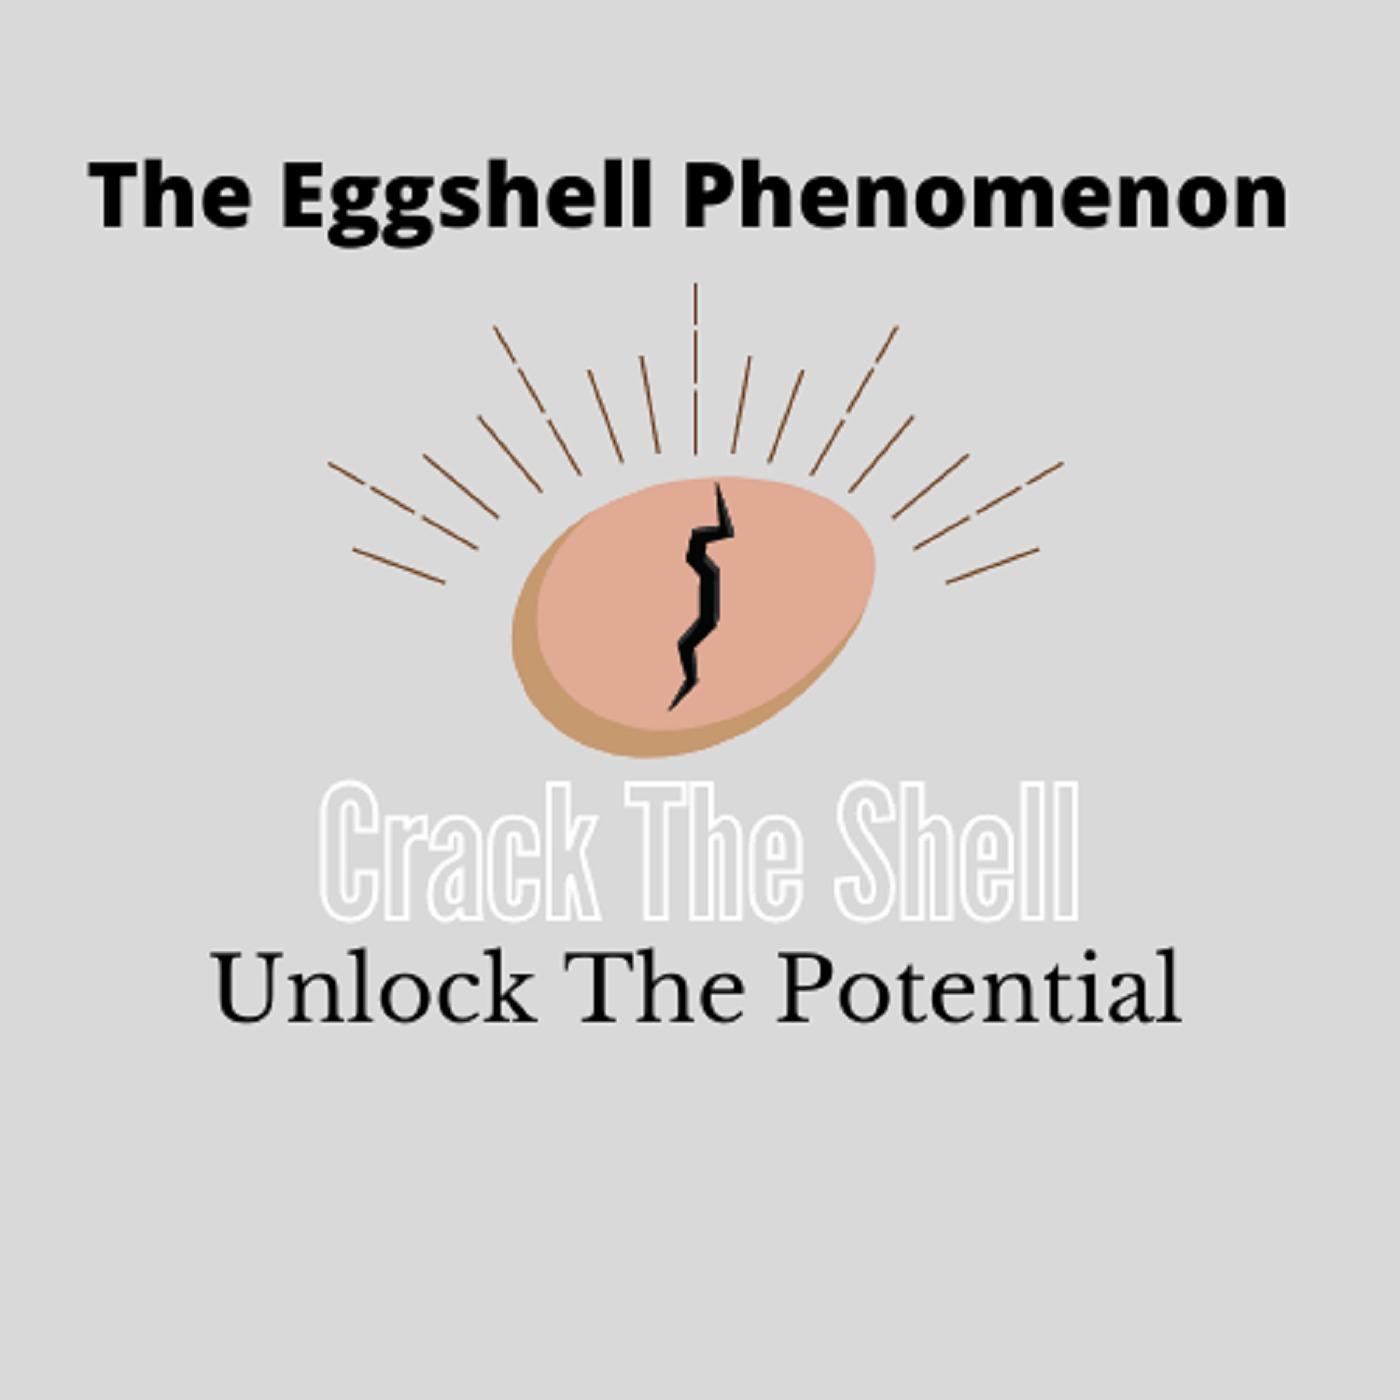 The Eggshell Phenomenon